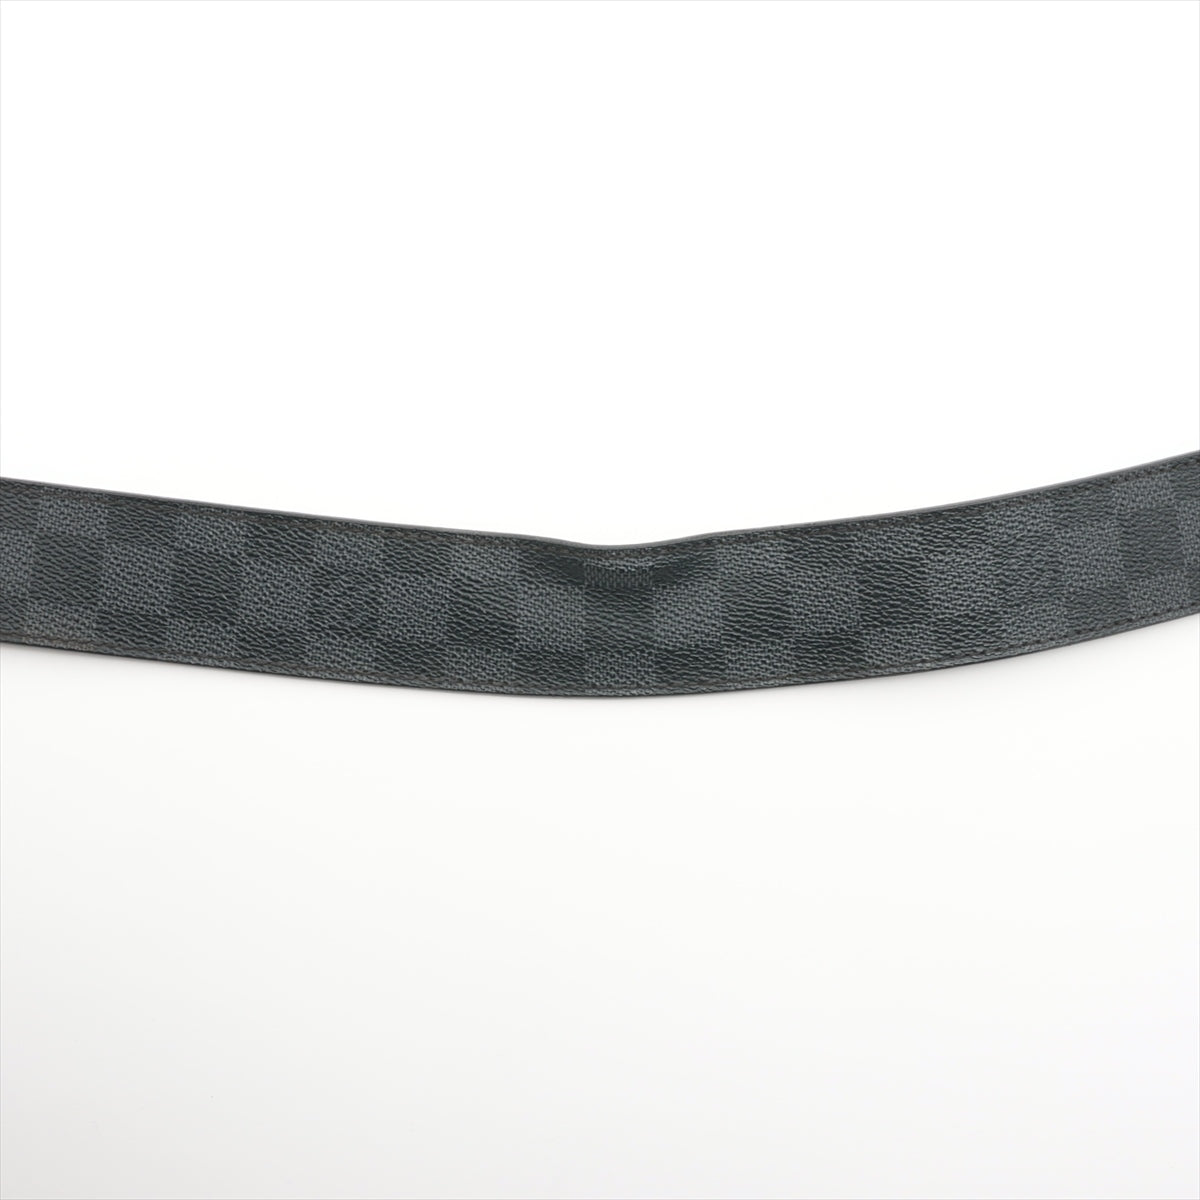 Louis Vuitton M9808 San Tulle LV Initiative CA3101 Belt 90/36 PVC & leather Black